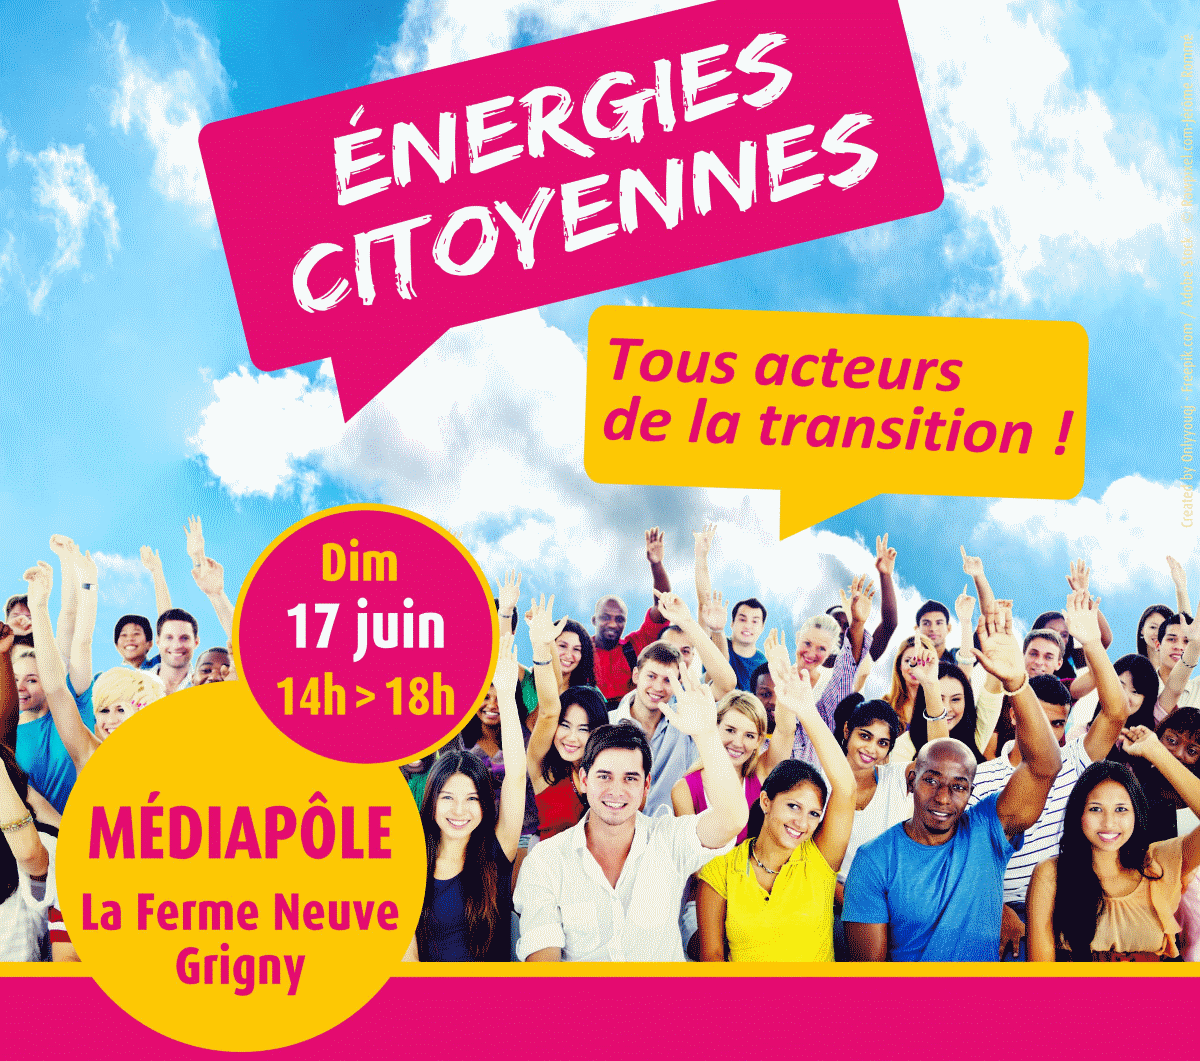 Energies Citoyennes – Evenement le 17 Juin à Grigny